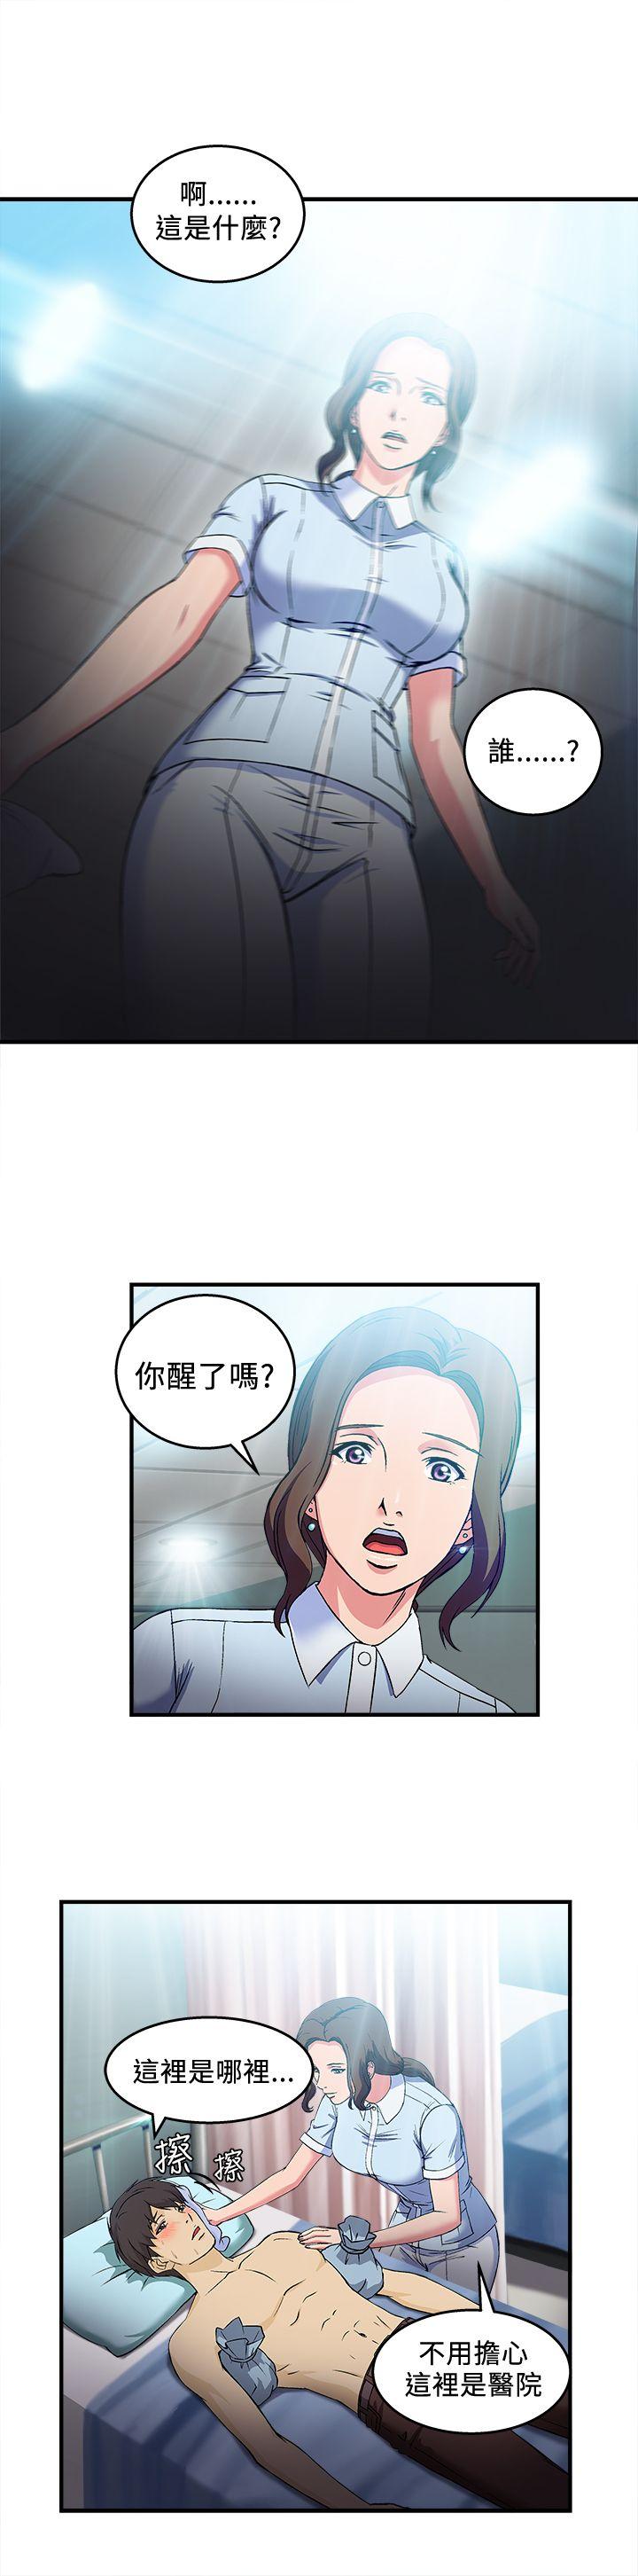 制服的诱惑  护士篇(1) 漫画图片17.jpg